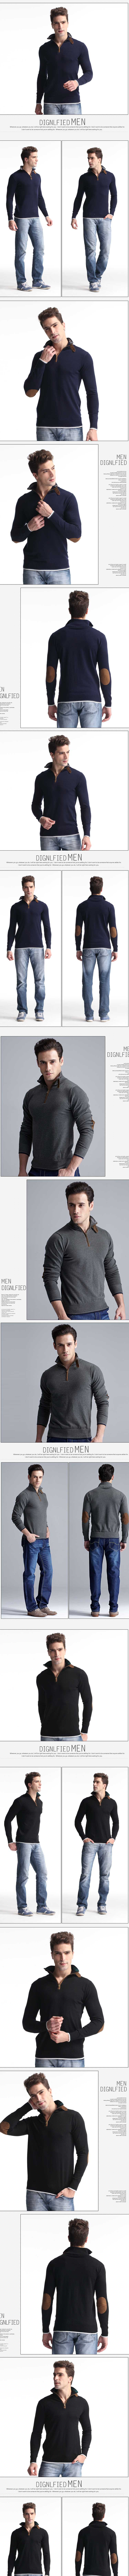 jual sweater cowok model rajut terbuat dari bhan rajut berkualitas